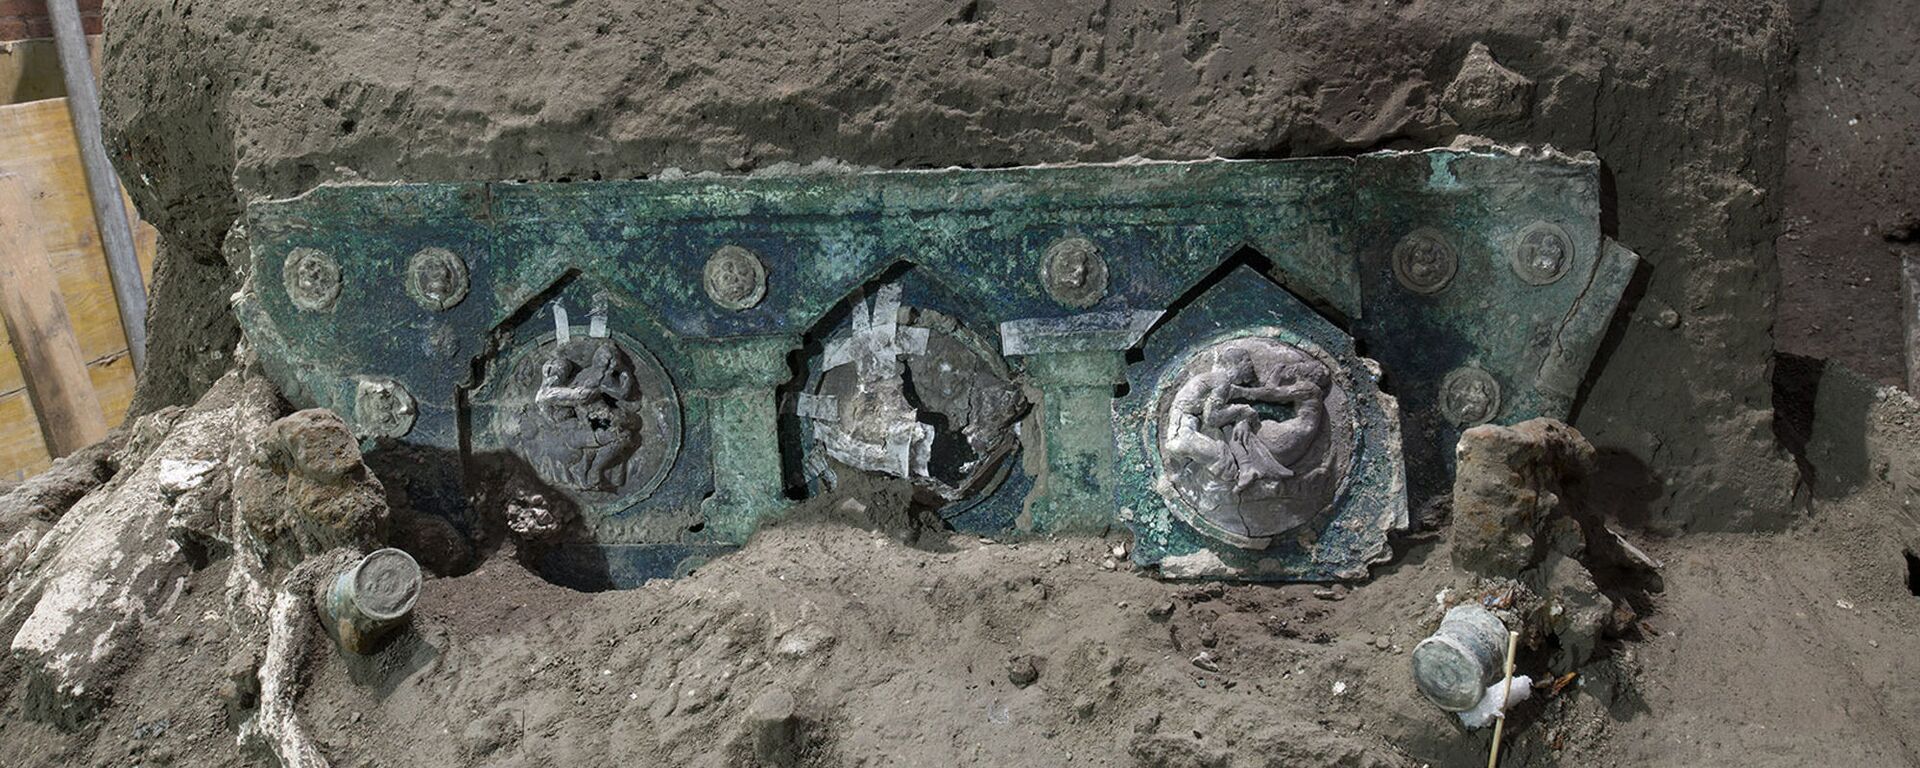 Луксузна староримска кочија нађена на археолошком налазишту у Помпеји - Sputnik Србија, 1920, 01.03.2021